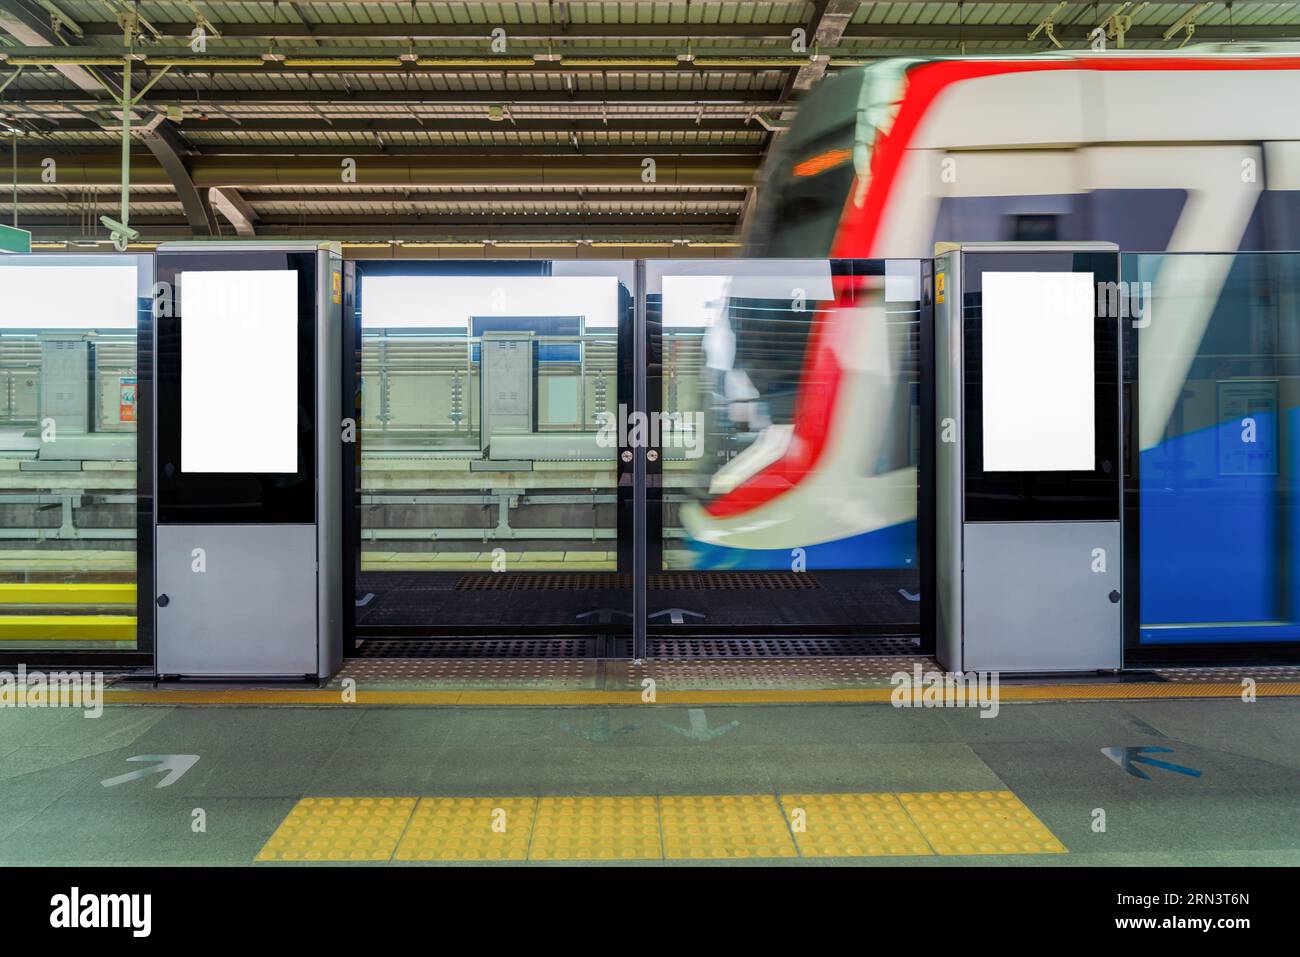 Cartelloni pubblicitari bianchi in una stazione della metropolitana o ferroviaria, pronti a trasmettere annunci pubblicitari accattivanti al pubblico dei pendolari. Foto Stock